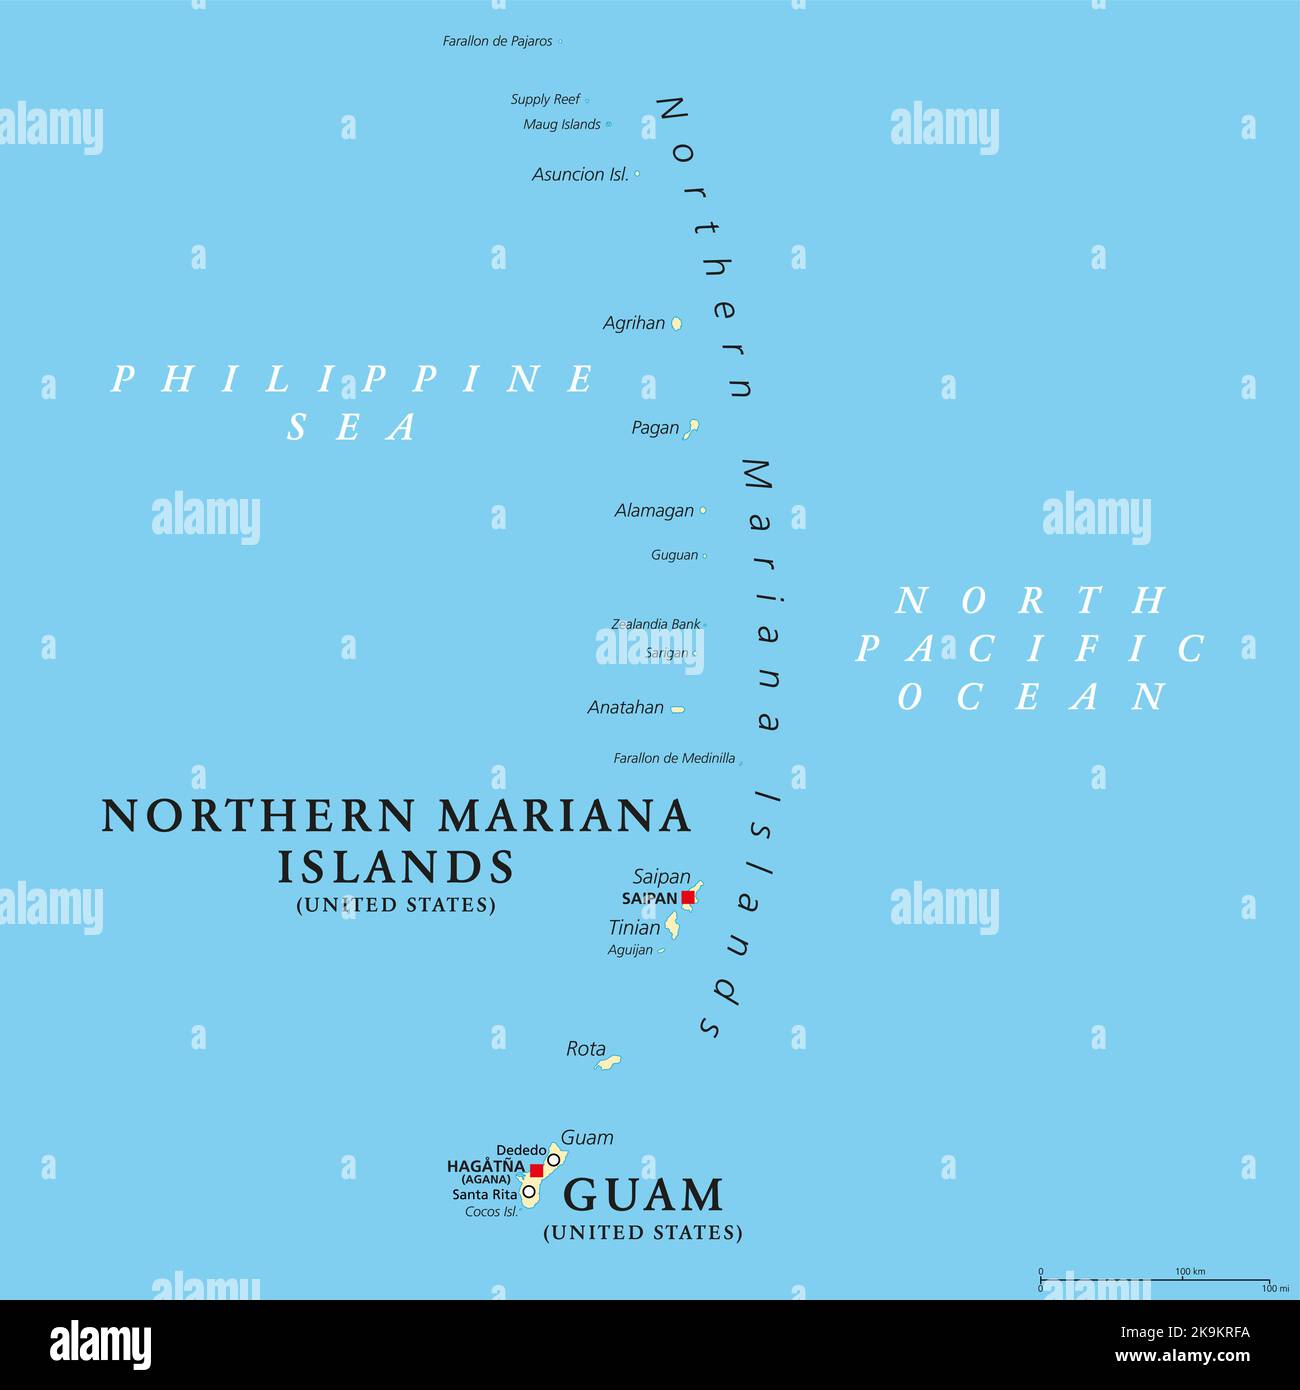 Guam e Isole Marianne Settentrionali, mappa politica. Due territori separati non incorporati degli Stati Uniti d'America nella subregione Micronesia. Foto Stock